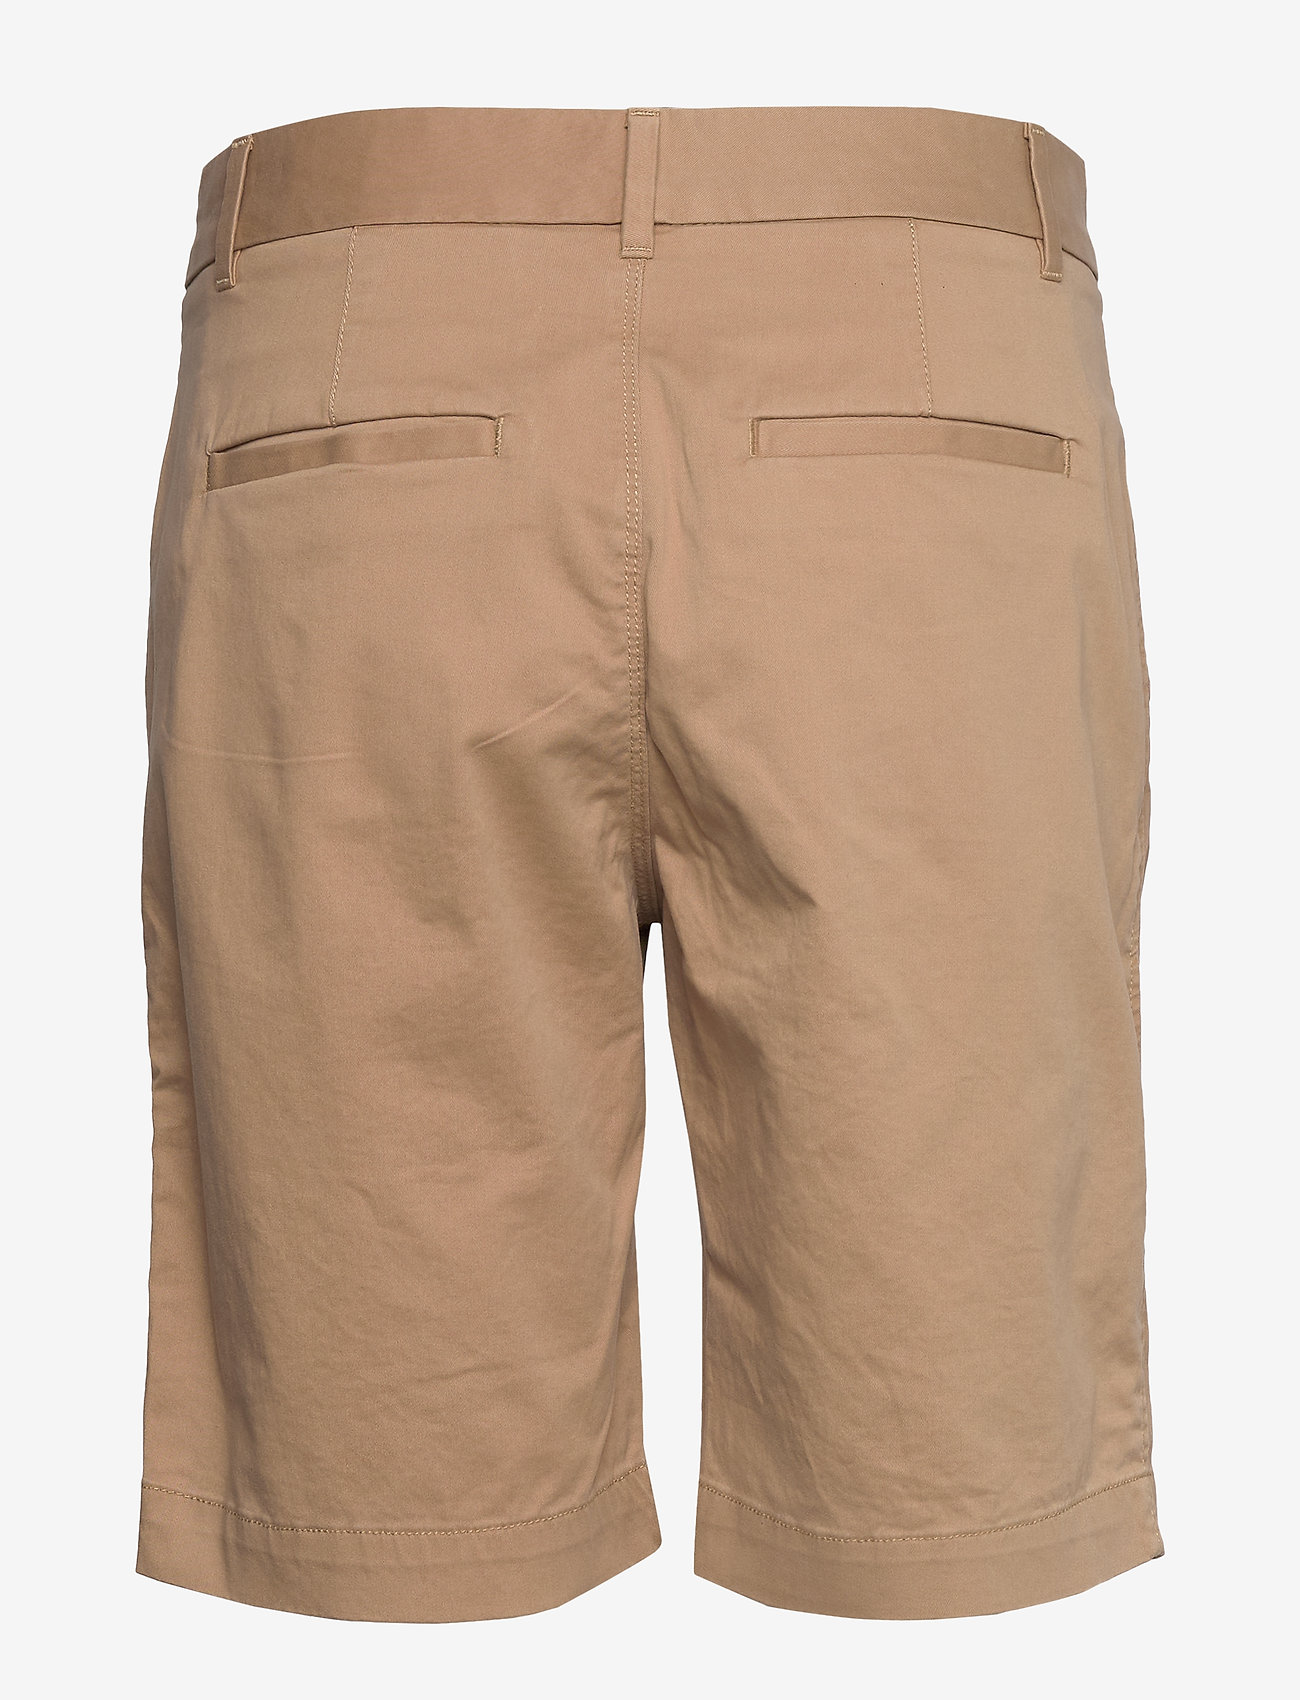 gap shorts